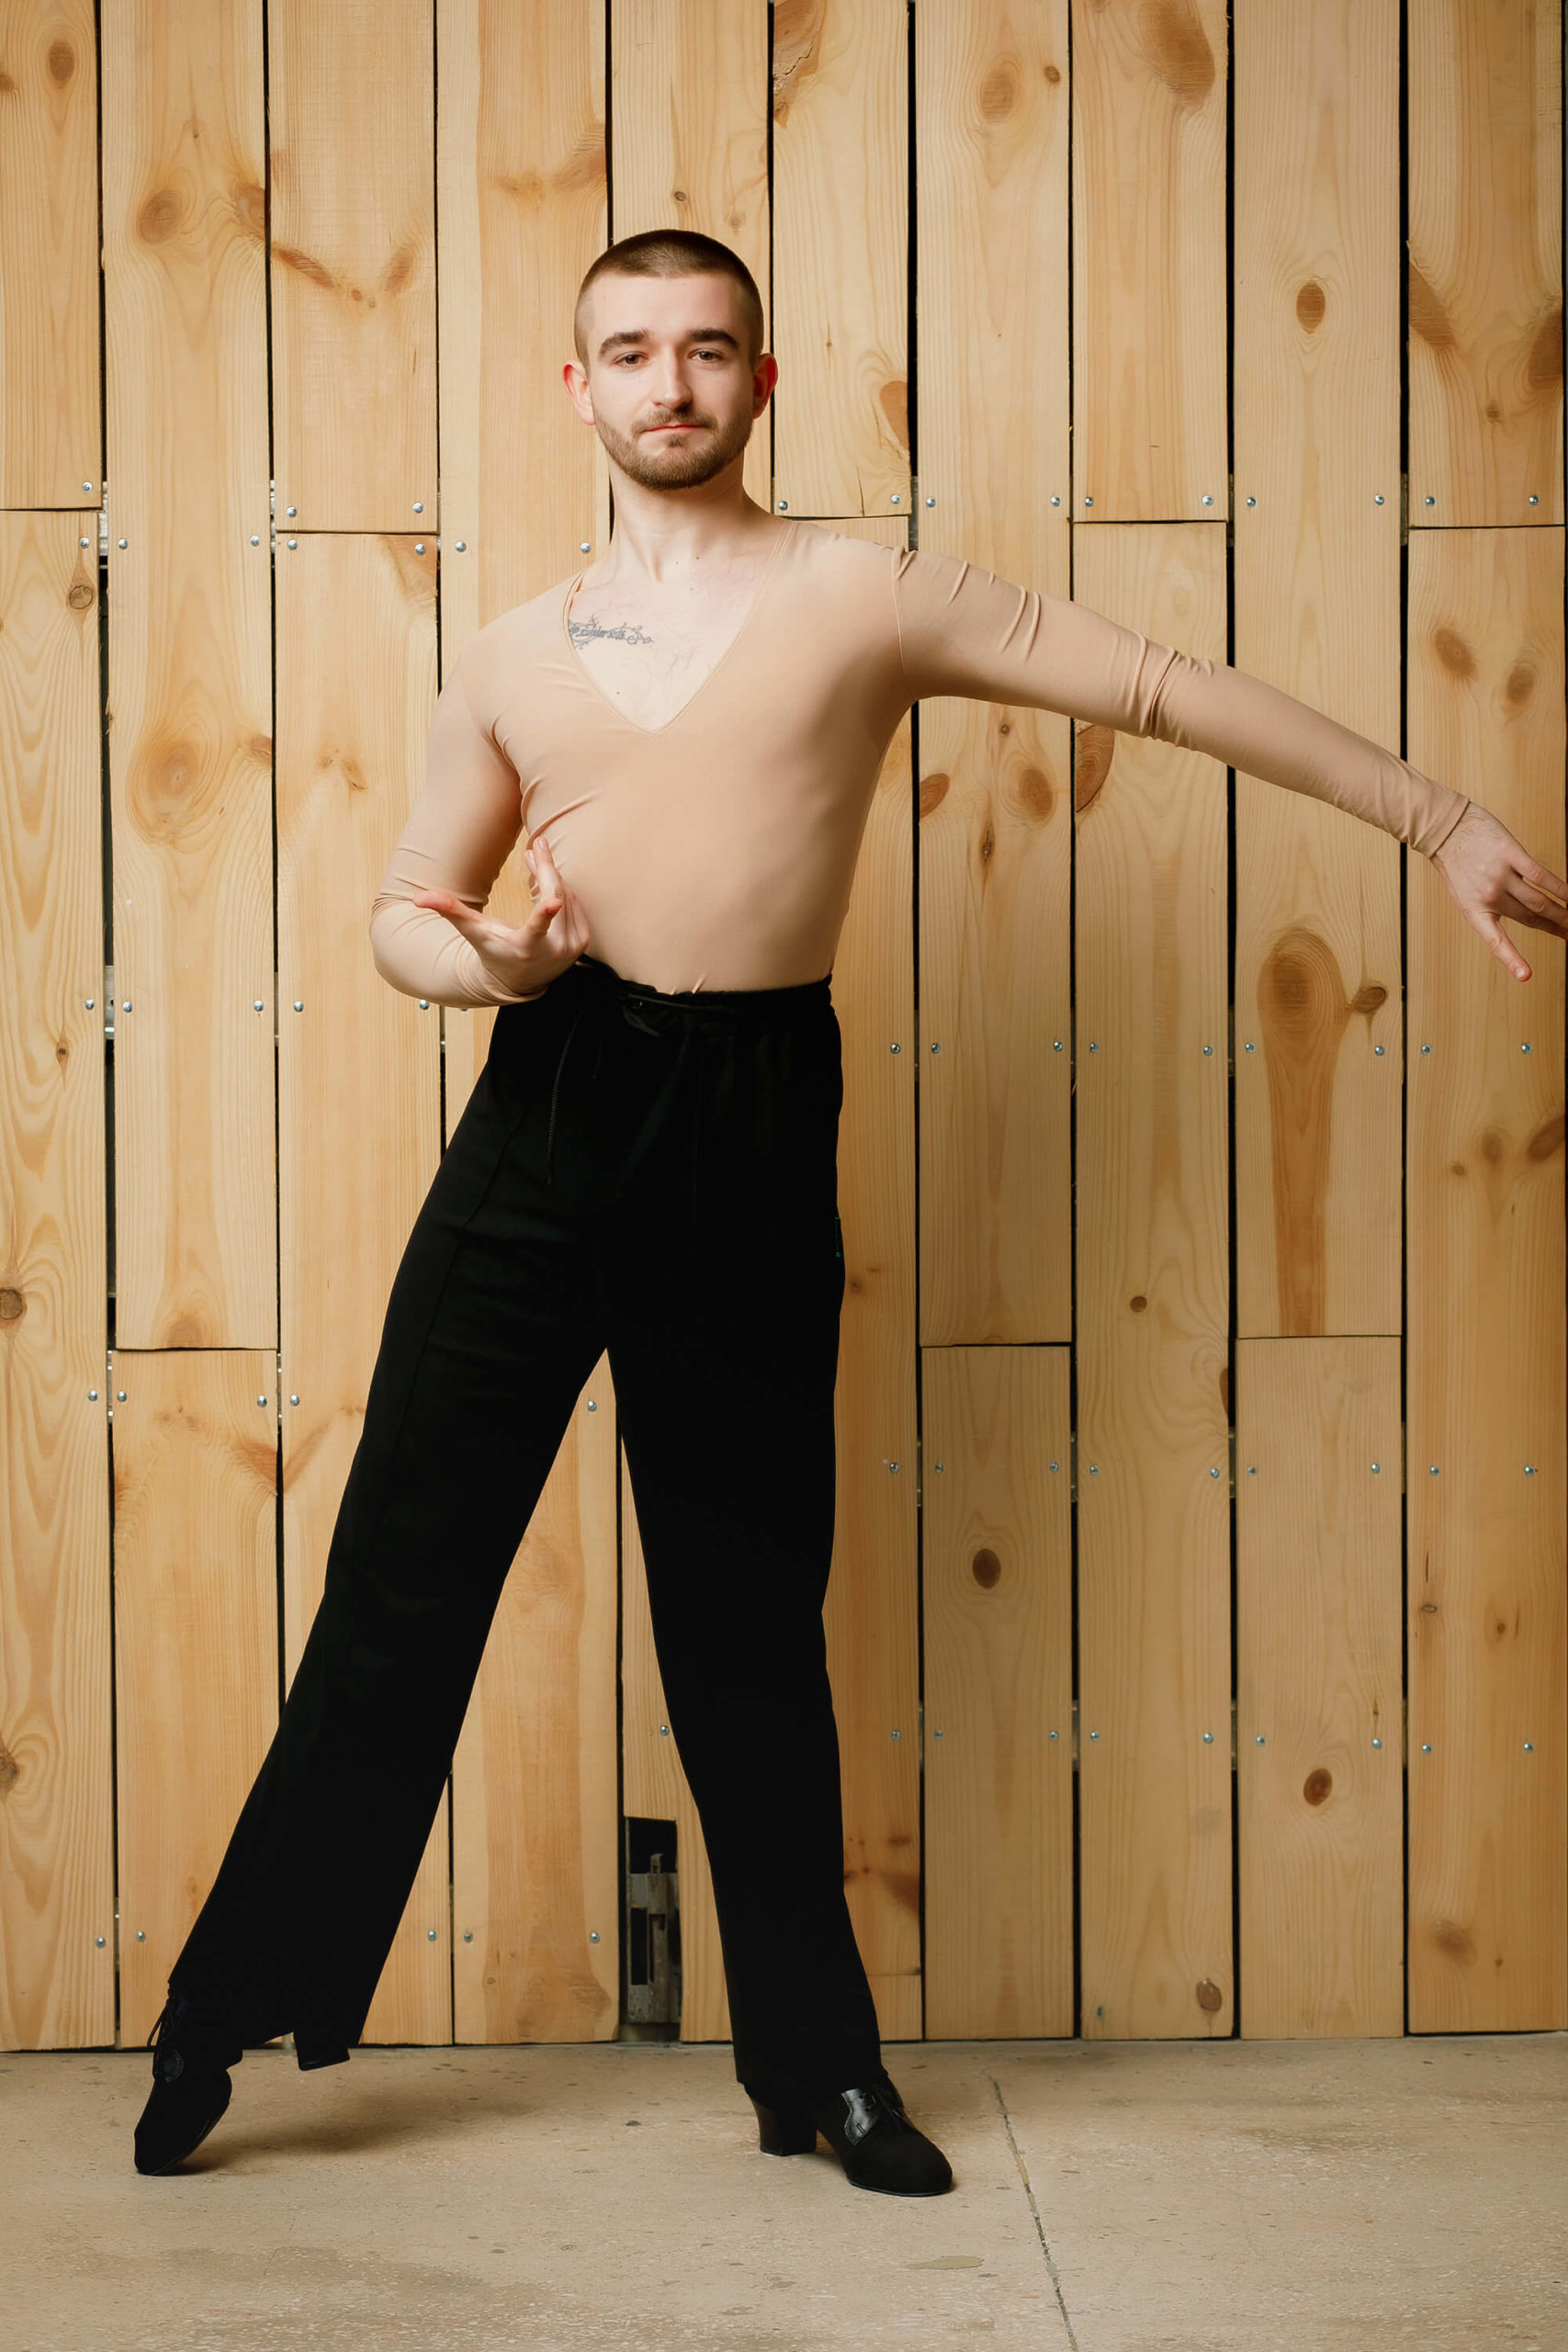 Spodnie treningowe męskie (chłopięce) model 001 marki Fashion Dance